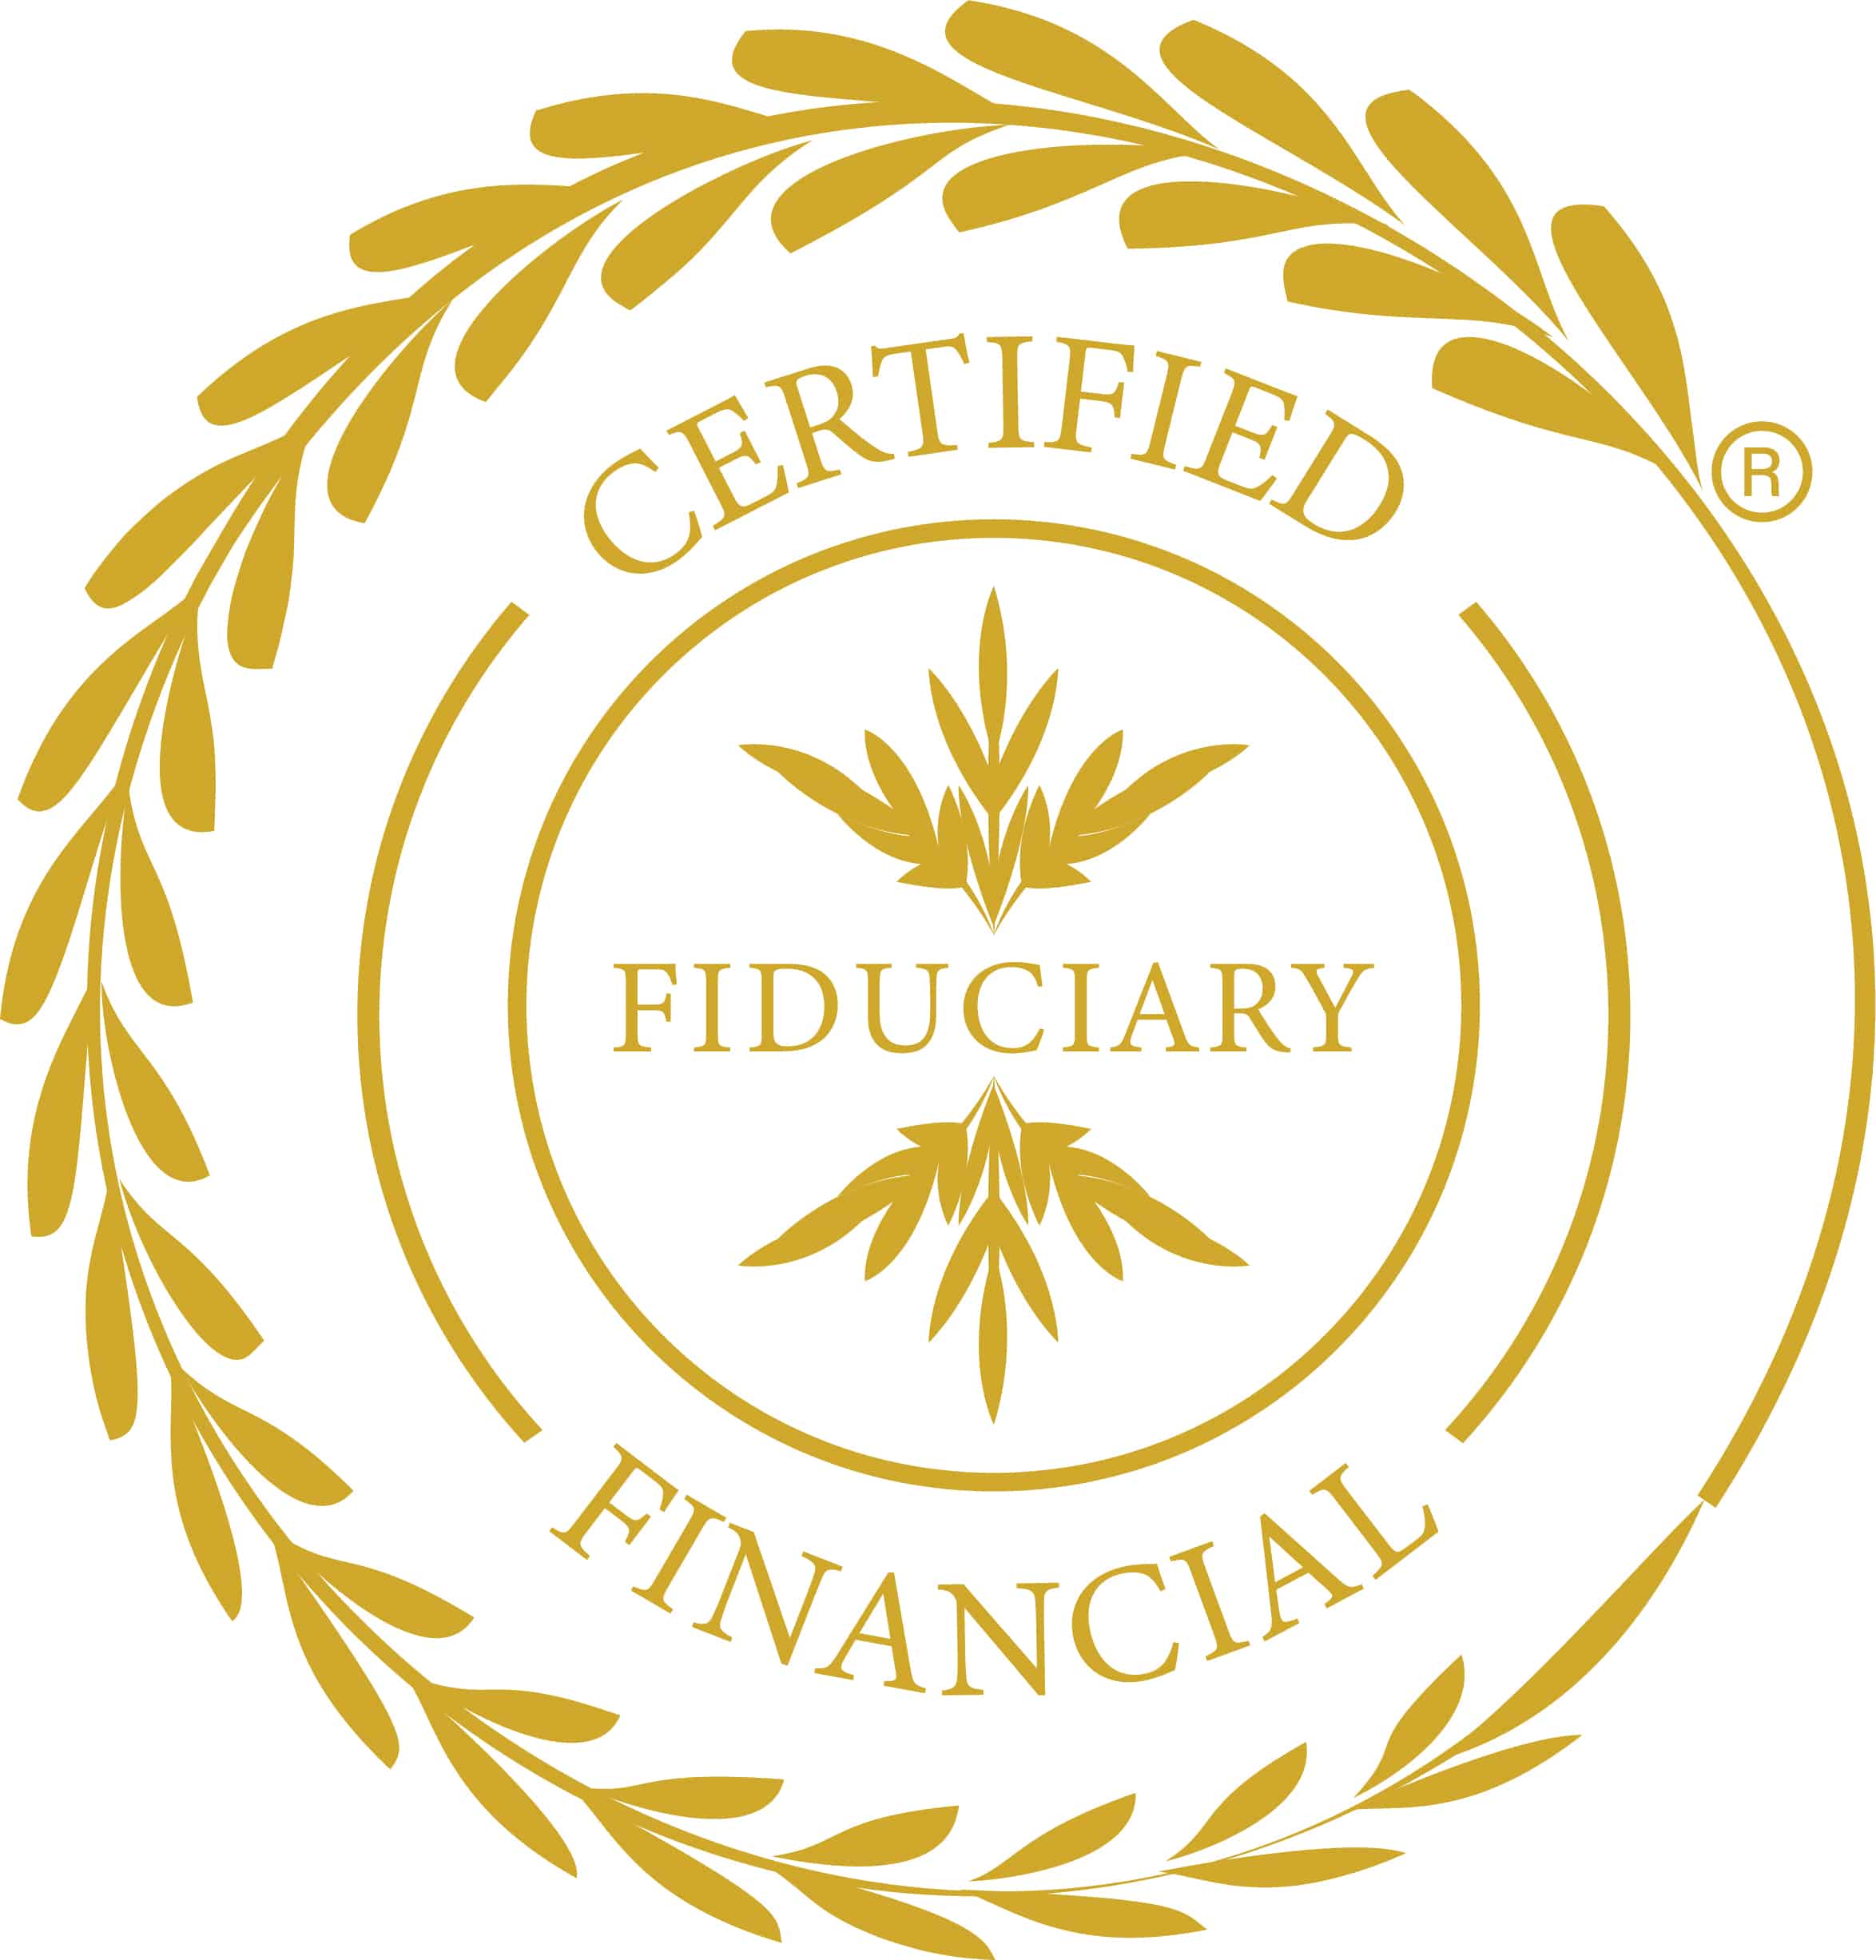 Certified Financial Fiduciary (CFF)